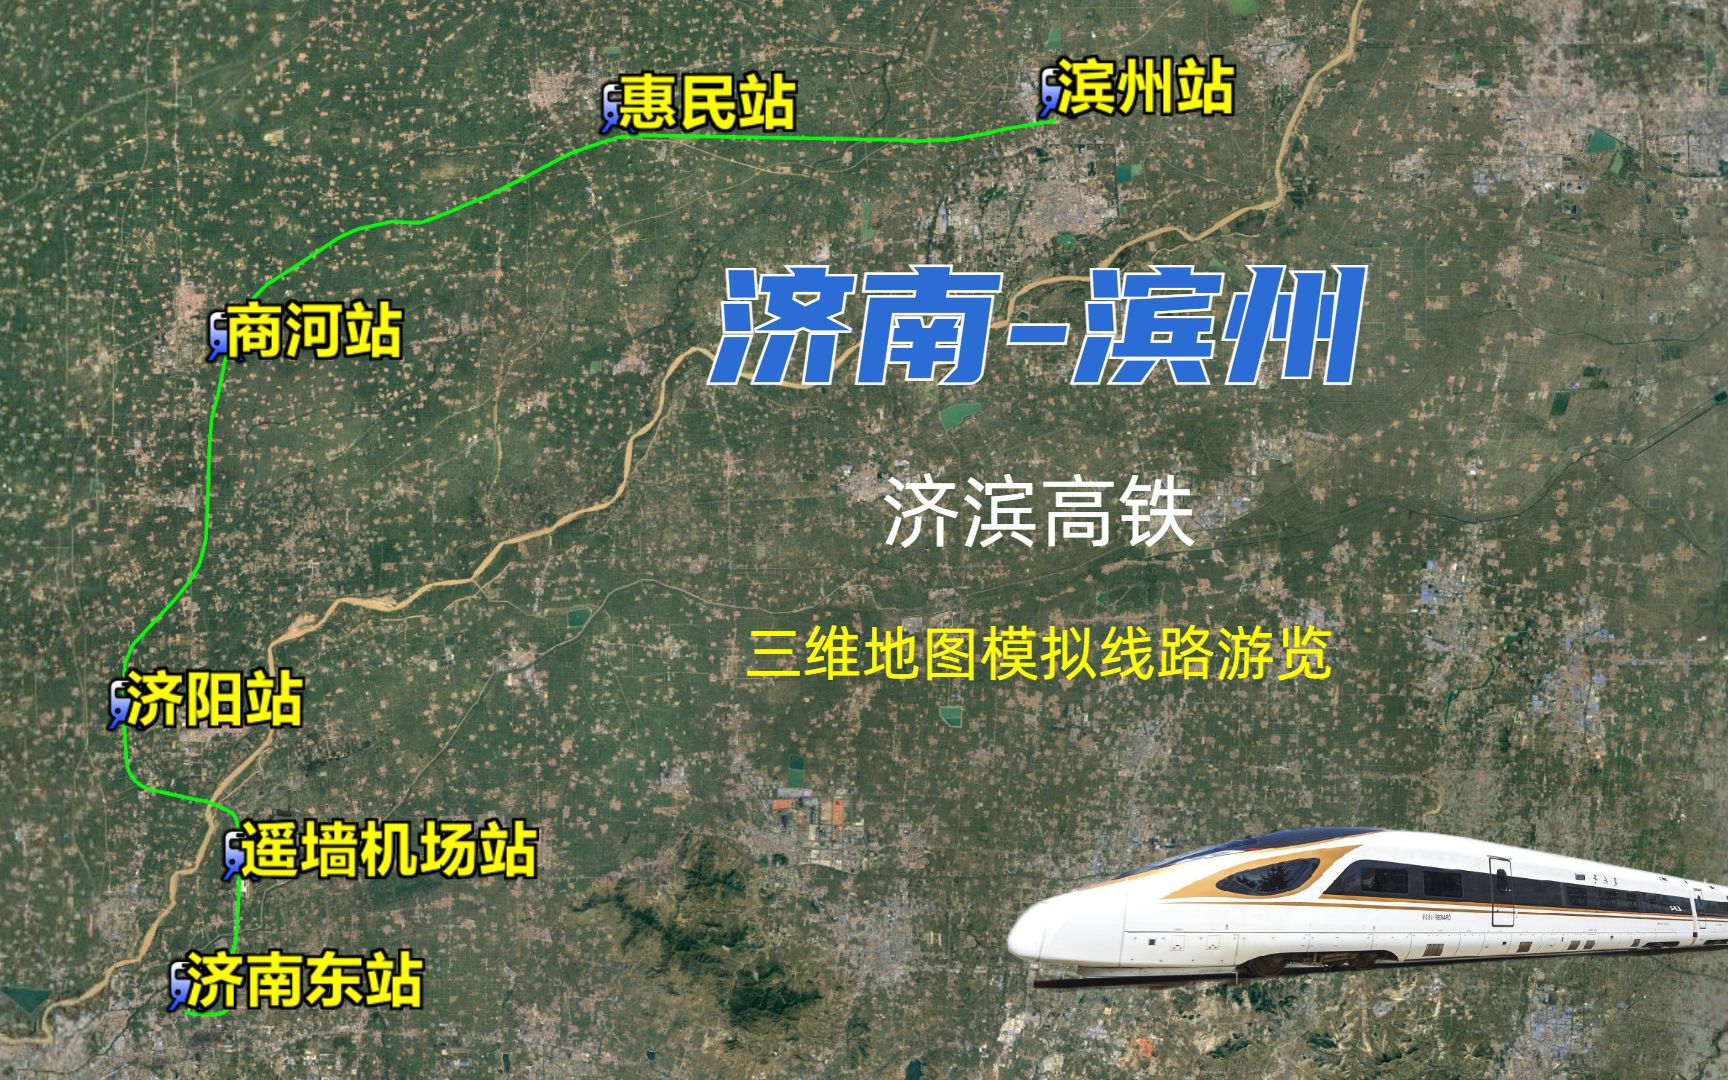 济南至滨州济滨高铁,遥墙国际机场重要通道,可半小时到达滨州